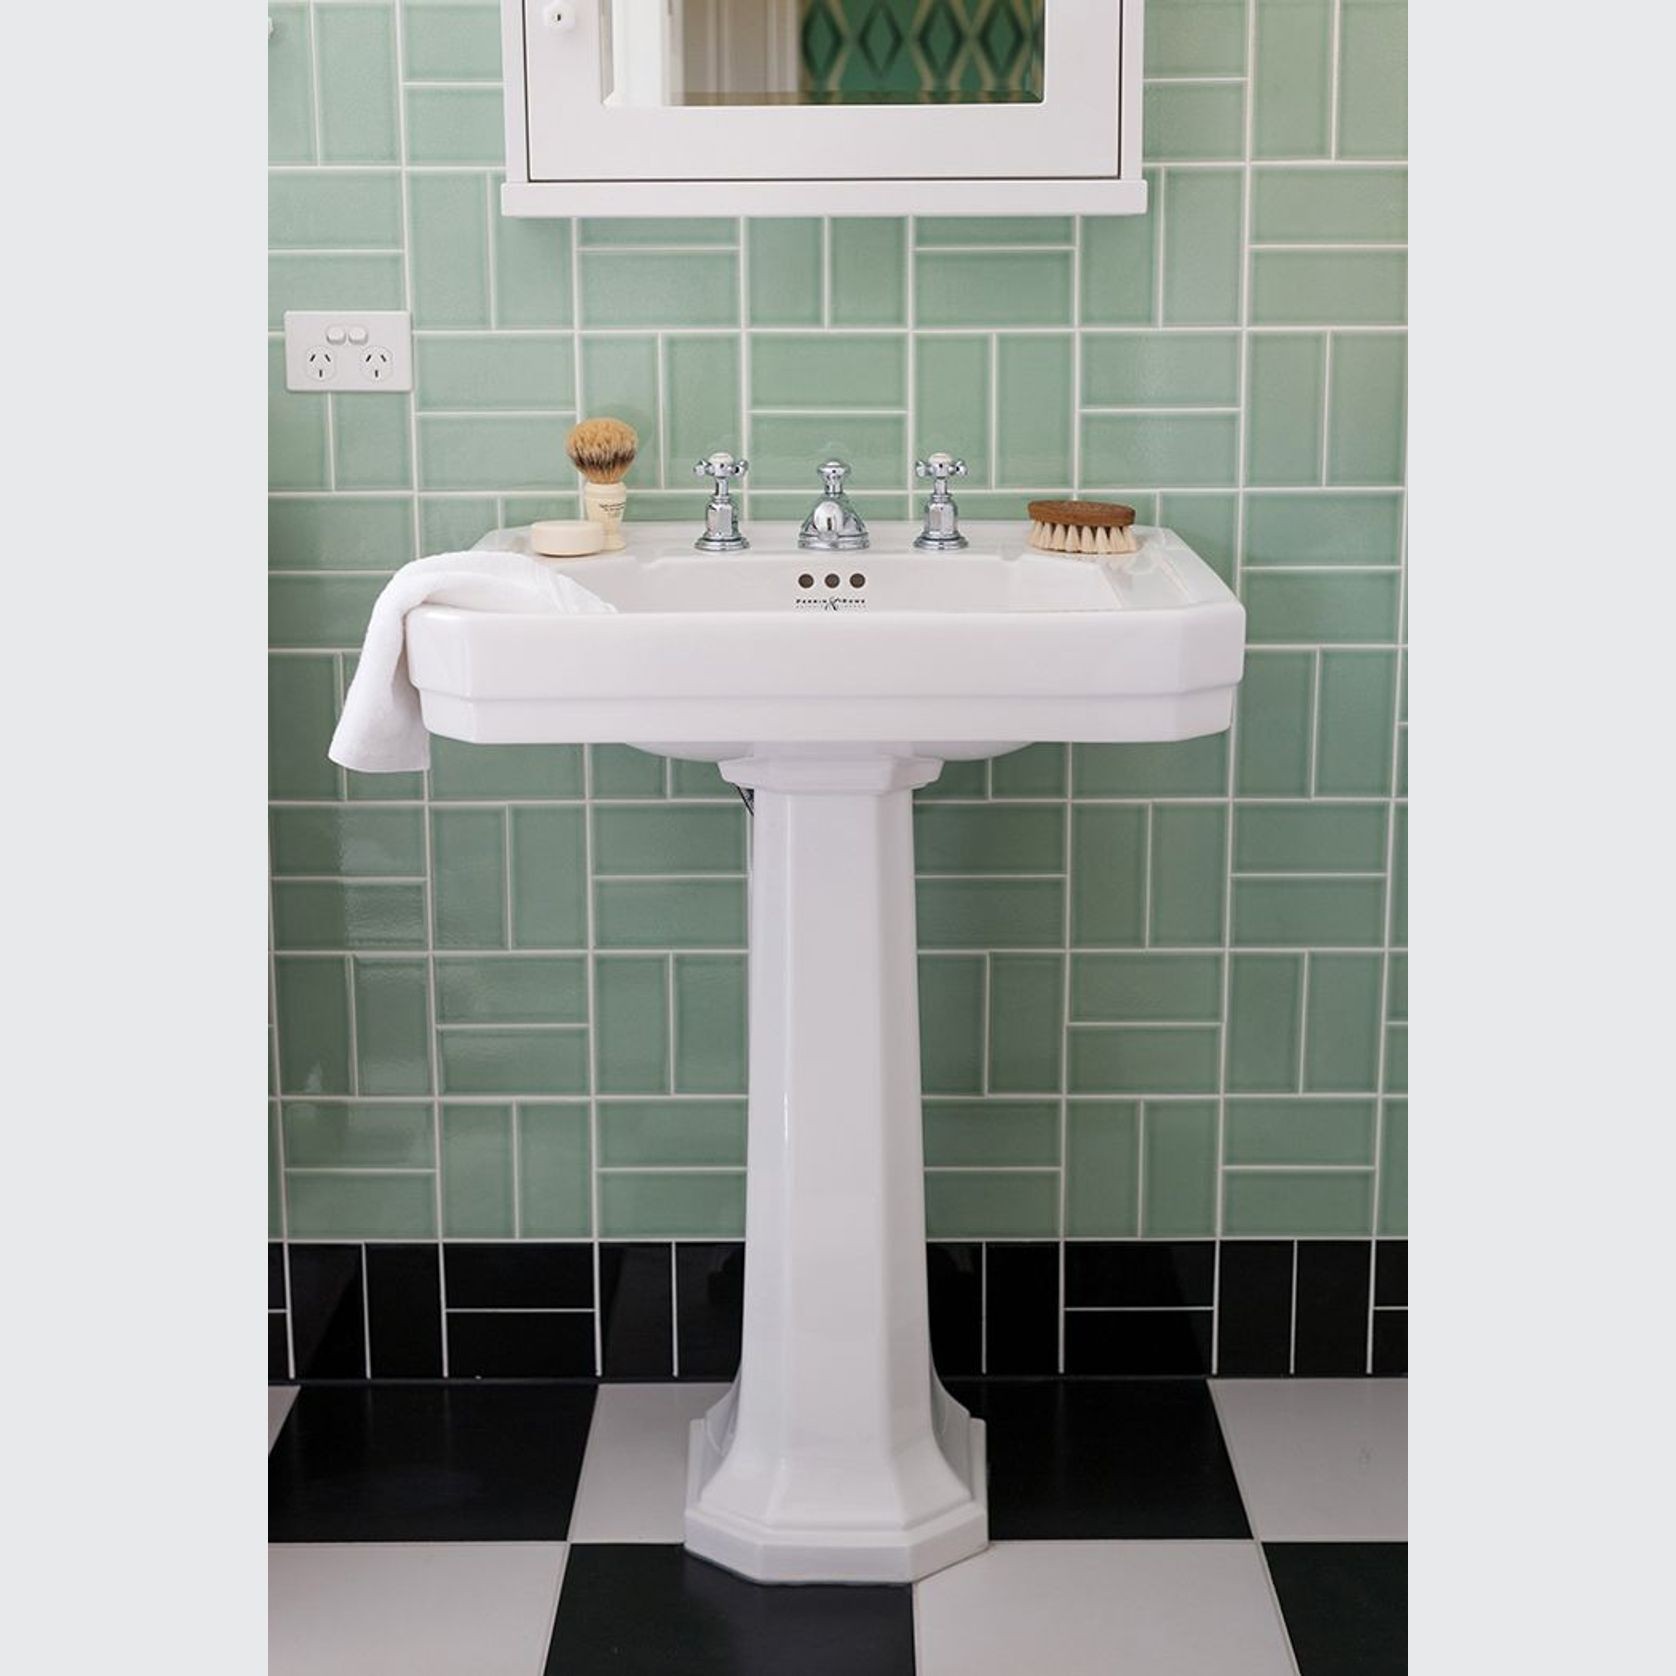 Perrin & Rowe Art Deco 630mm pedestal basin gallery detail image